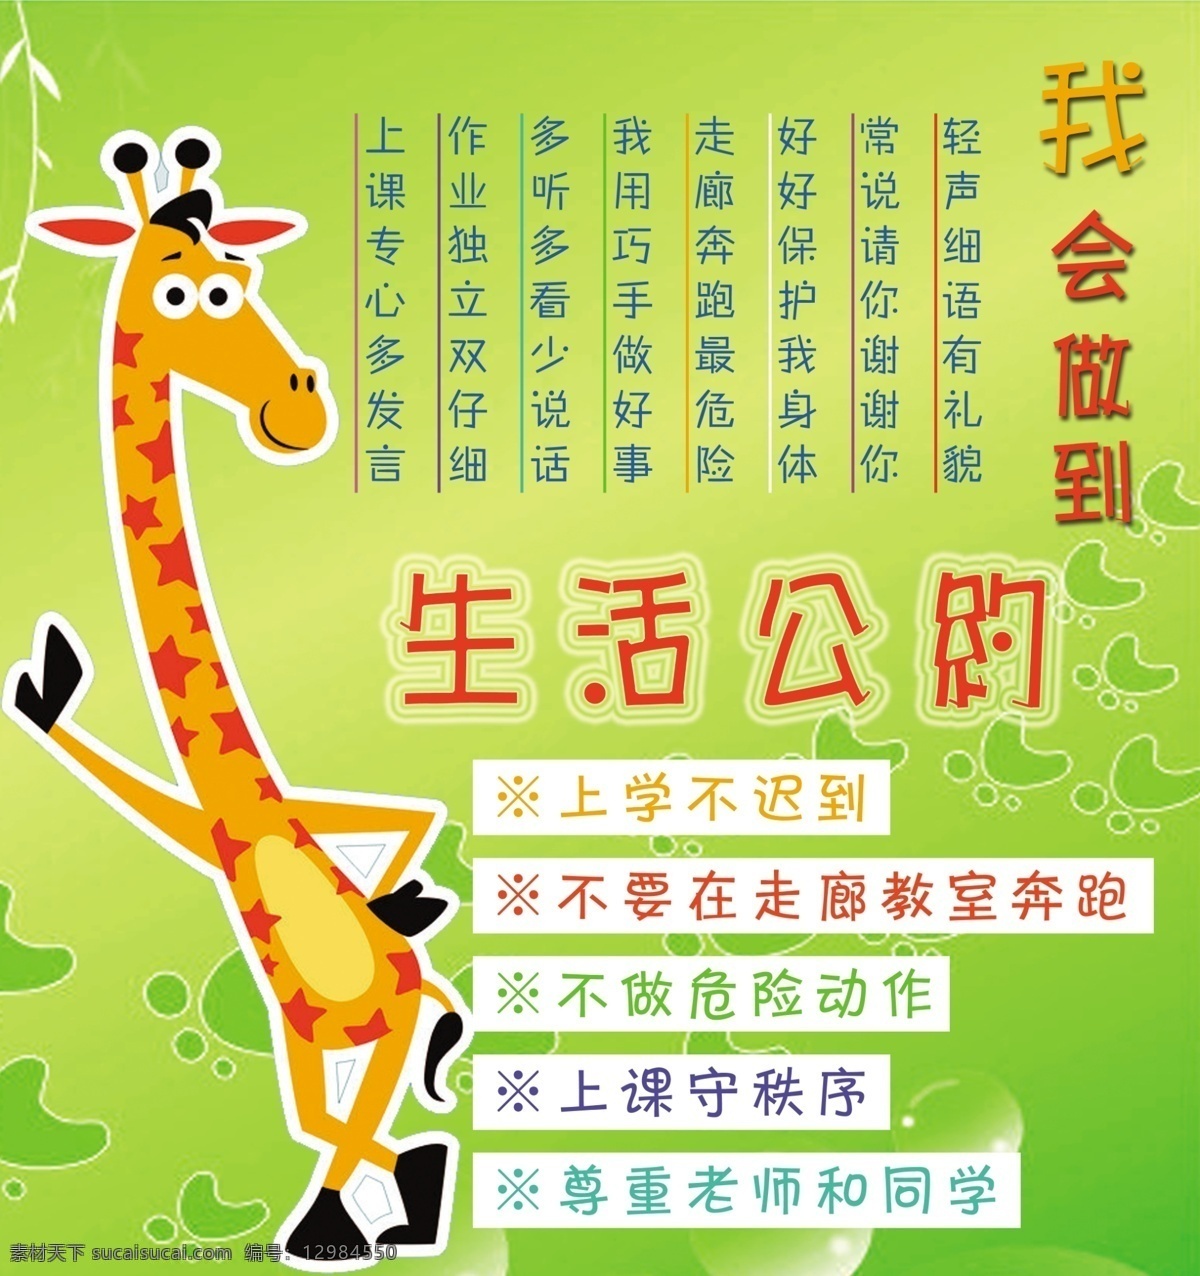 长颈鹿卡通 幼儿园 卡通 长颈鹿 绿色 生活公约 我会做到 版面 展板模板 广告设计模板 源文件